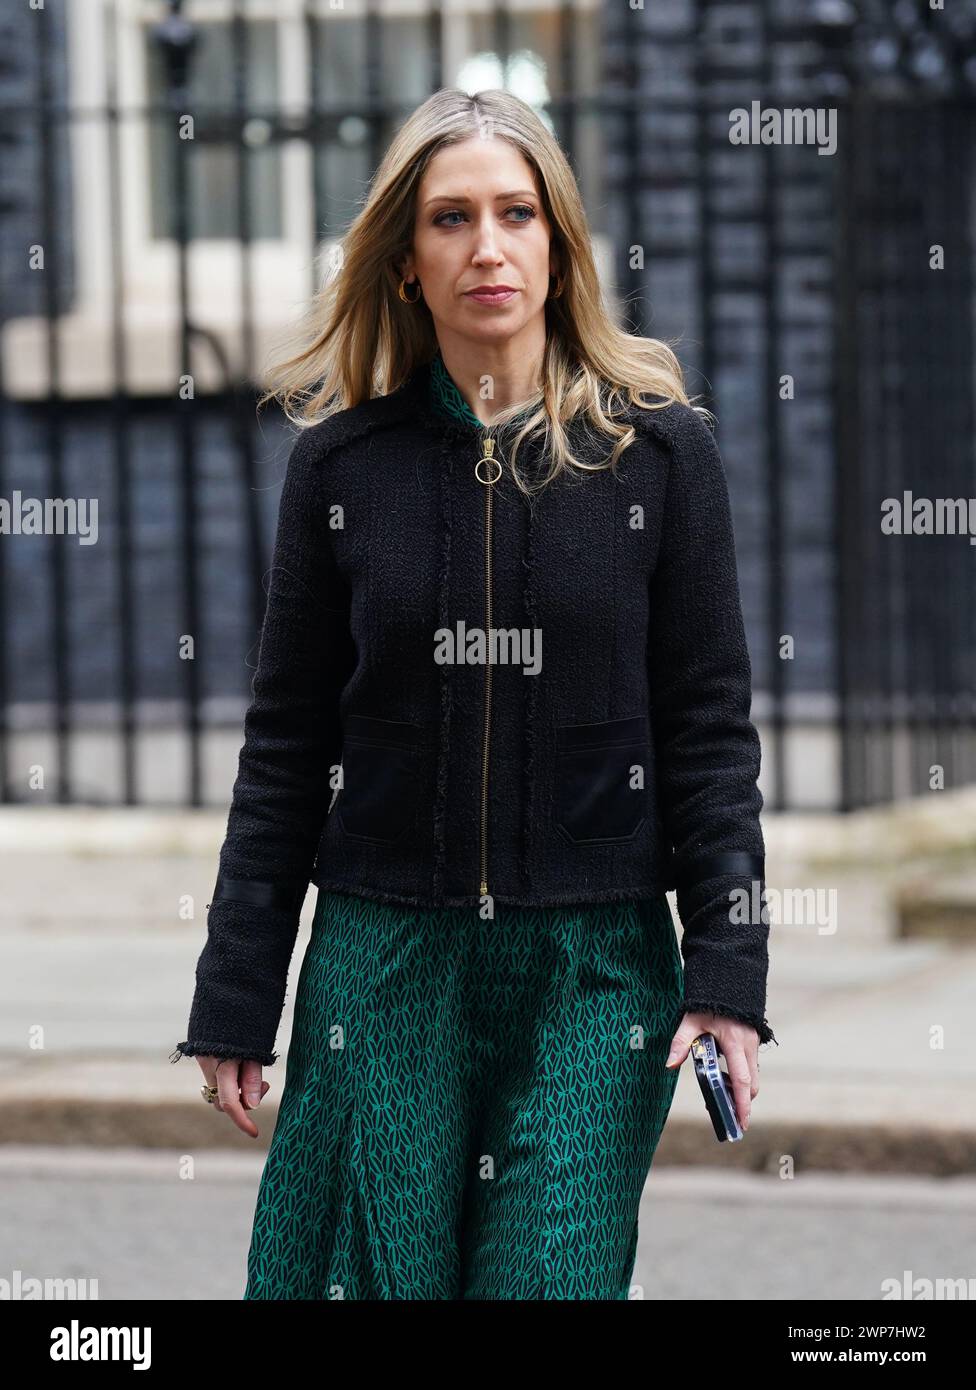 Die Chefsekretärin des Finanzministeriums, Laura Trott, kommt in der Downing Street, London, zu einer Kabinettssitzung vor dem Haushalt an. Bilddatum: Mittwoch, 6. März 2024. Stockfoto